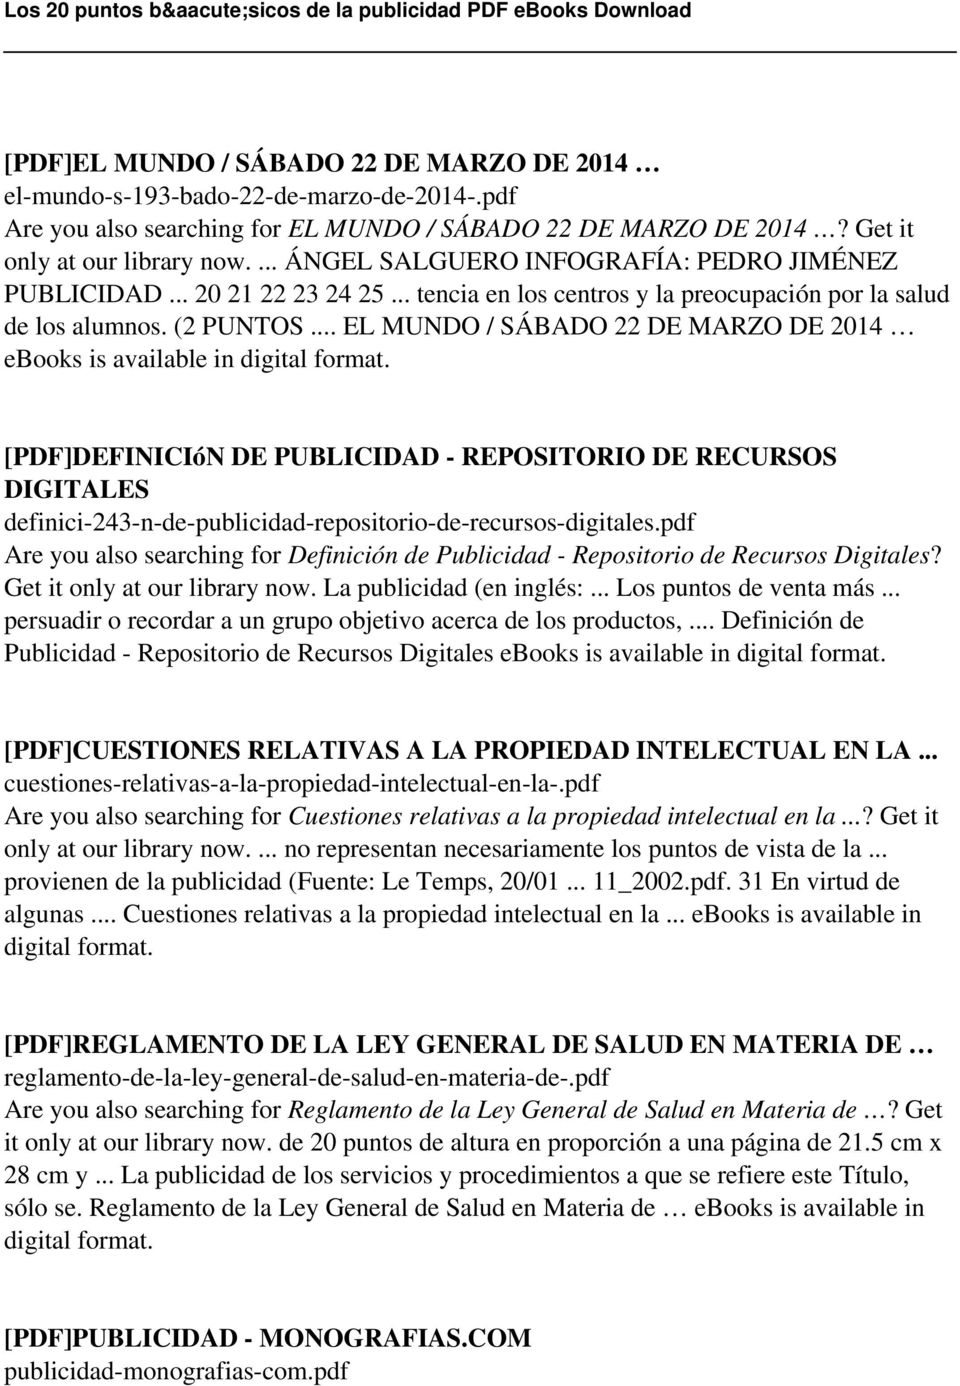 .. EL MUNDO / SÁBADO 22 DE MARZO DE 2014 ebooks is available in [PDF]DEFINICIóN DE PUBLICIDAD - REPOSITORIO DE RECURSOS DIGITALES definici-243-n-de-publicidad-repositorio-de-recursos-digitales.